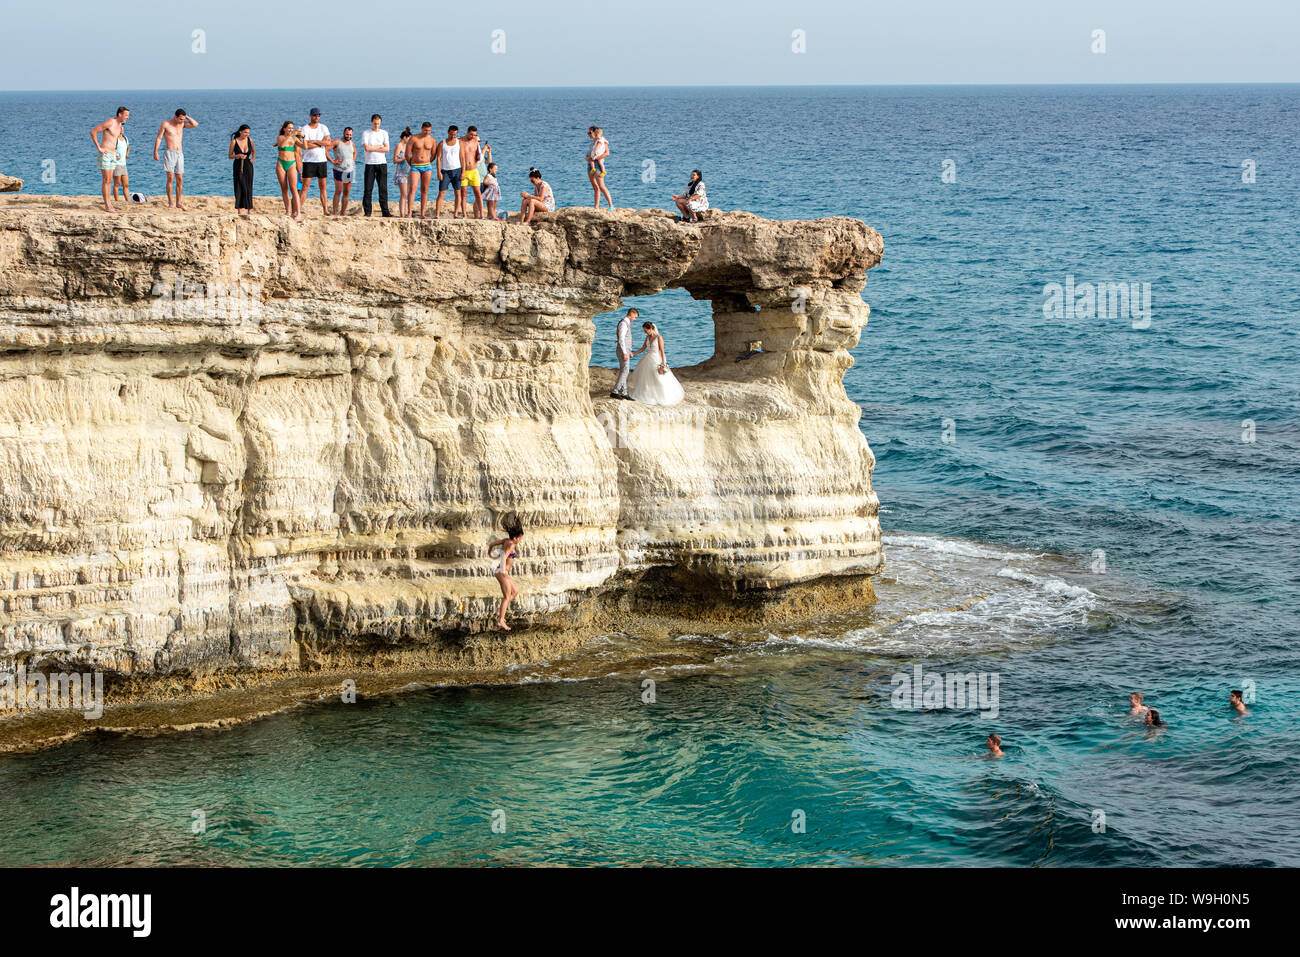 La gente de pie y sentada sobre las rocas, disfrutando de las aguas cristalinas y una joven pareja de casados obtener la fotografía Foto de stock